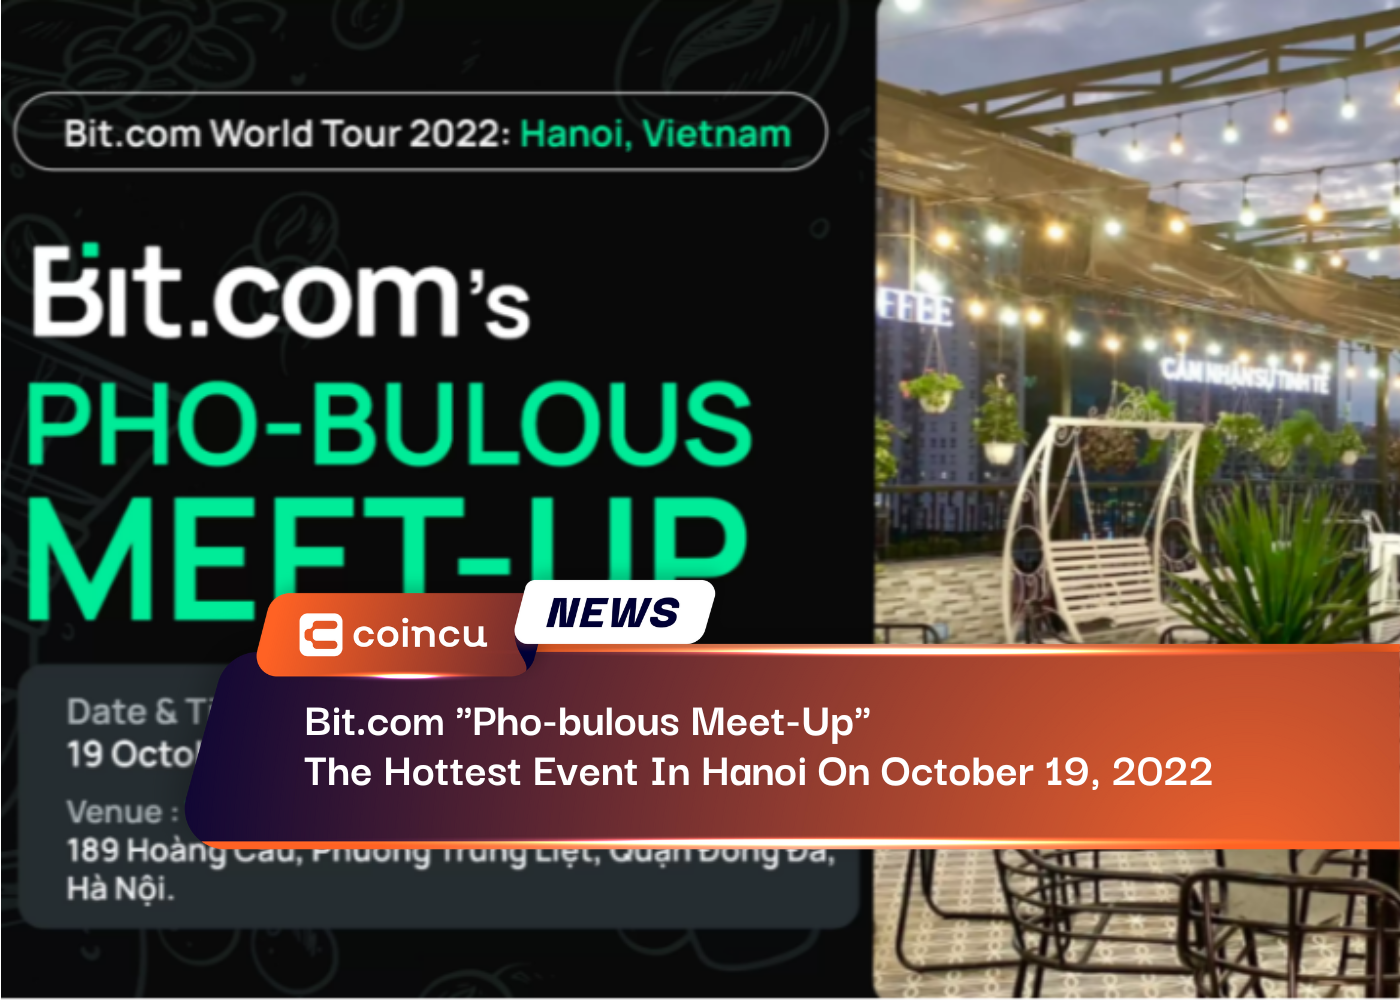 Bit.com "फ़ो-बुलस मीट-अप", 19 अक्टूबर, 2022 को हनोई में सबसे हॉट इवेंट